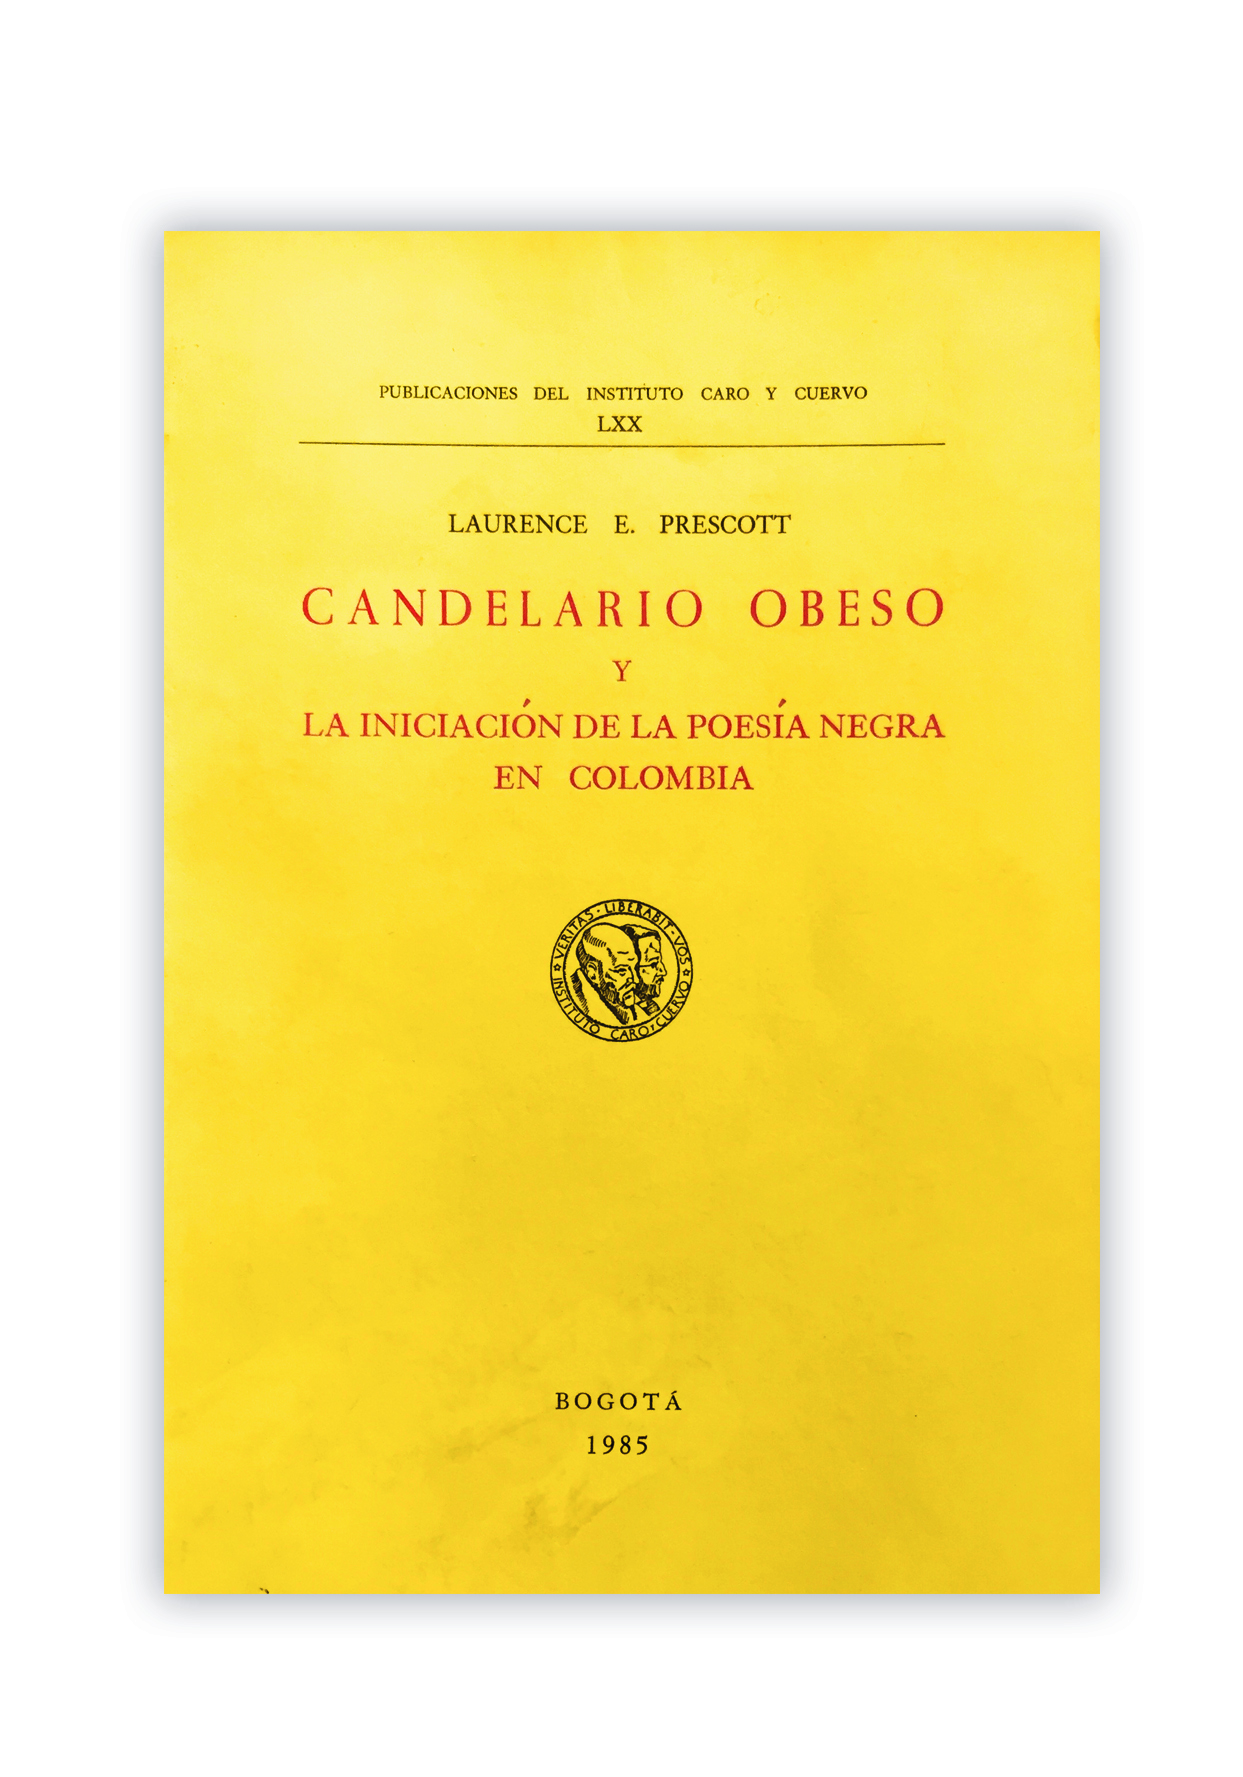 Candelario Obeso y la iniciación de la poesía negra en Colombia